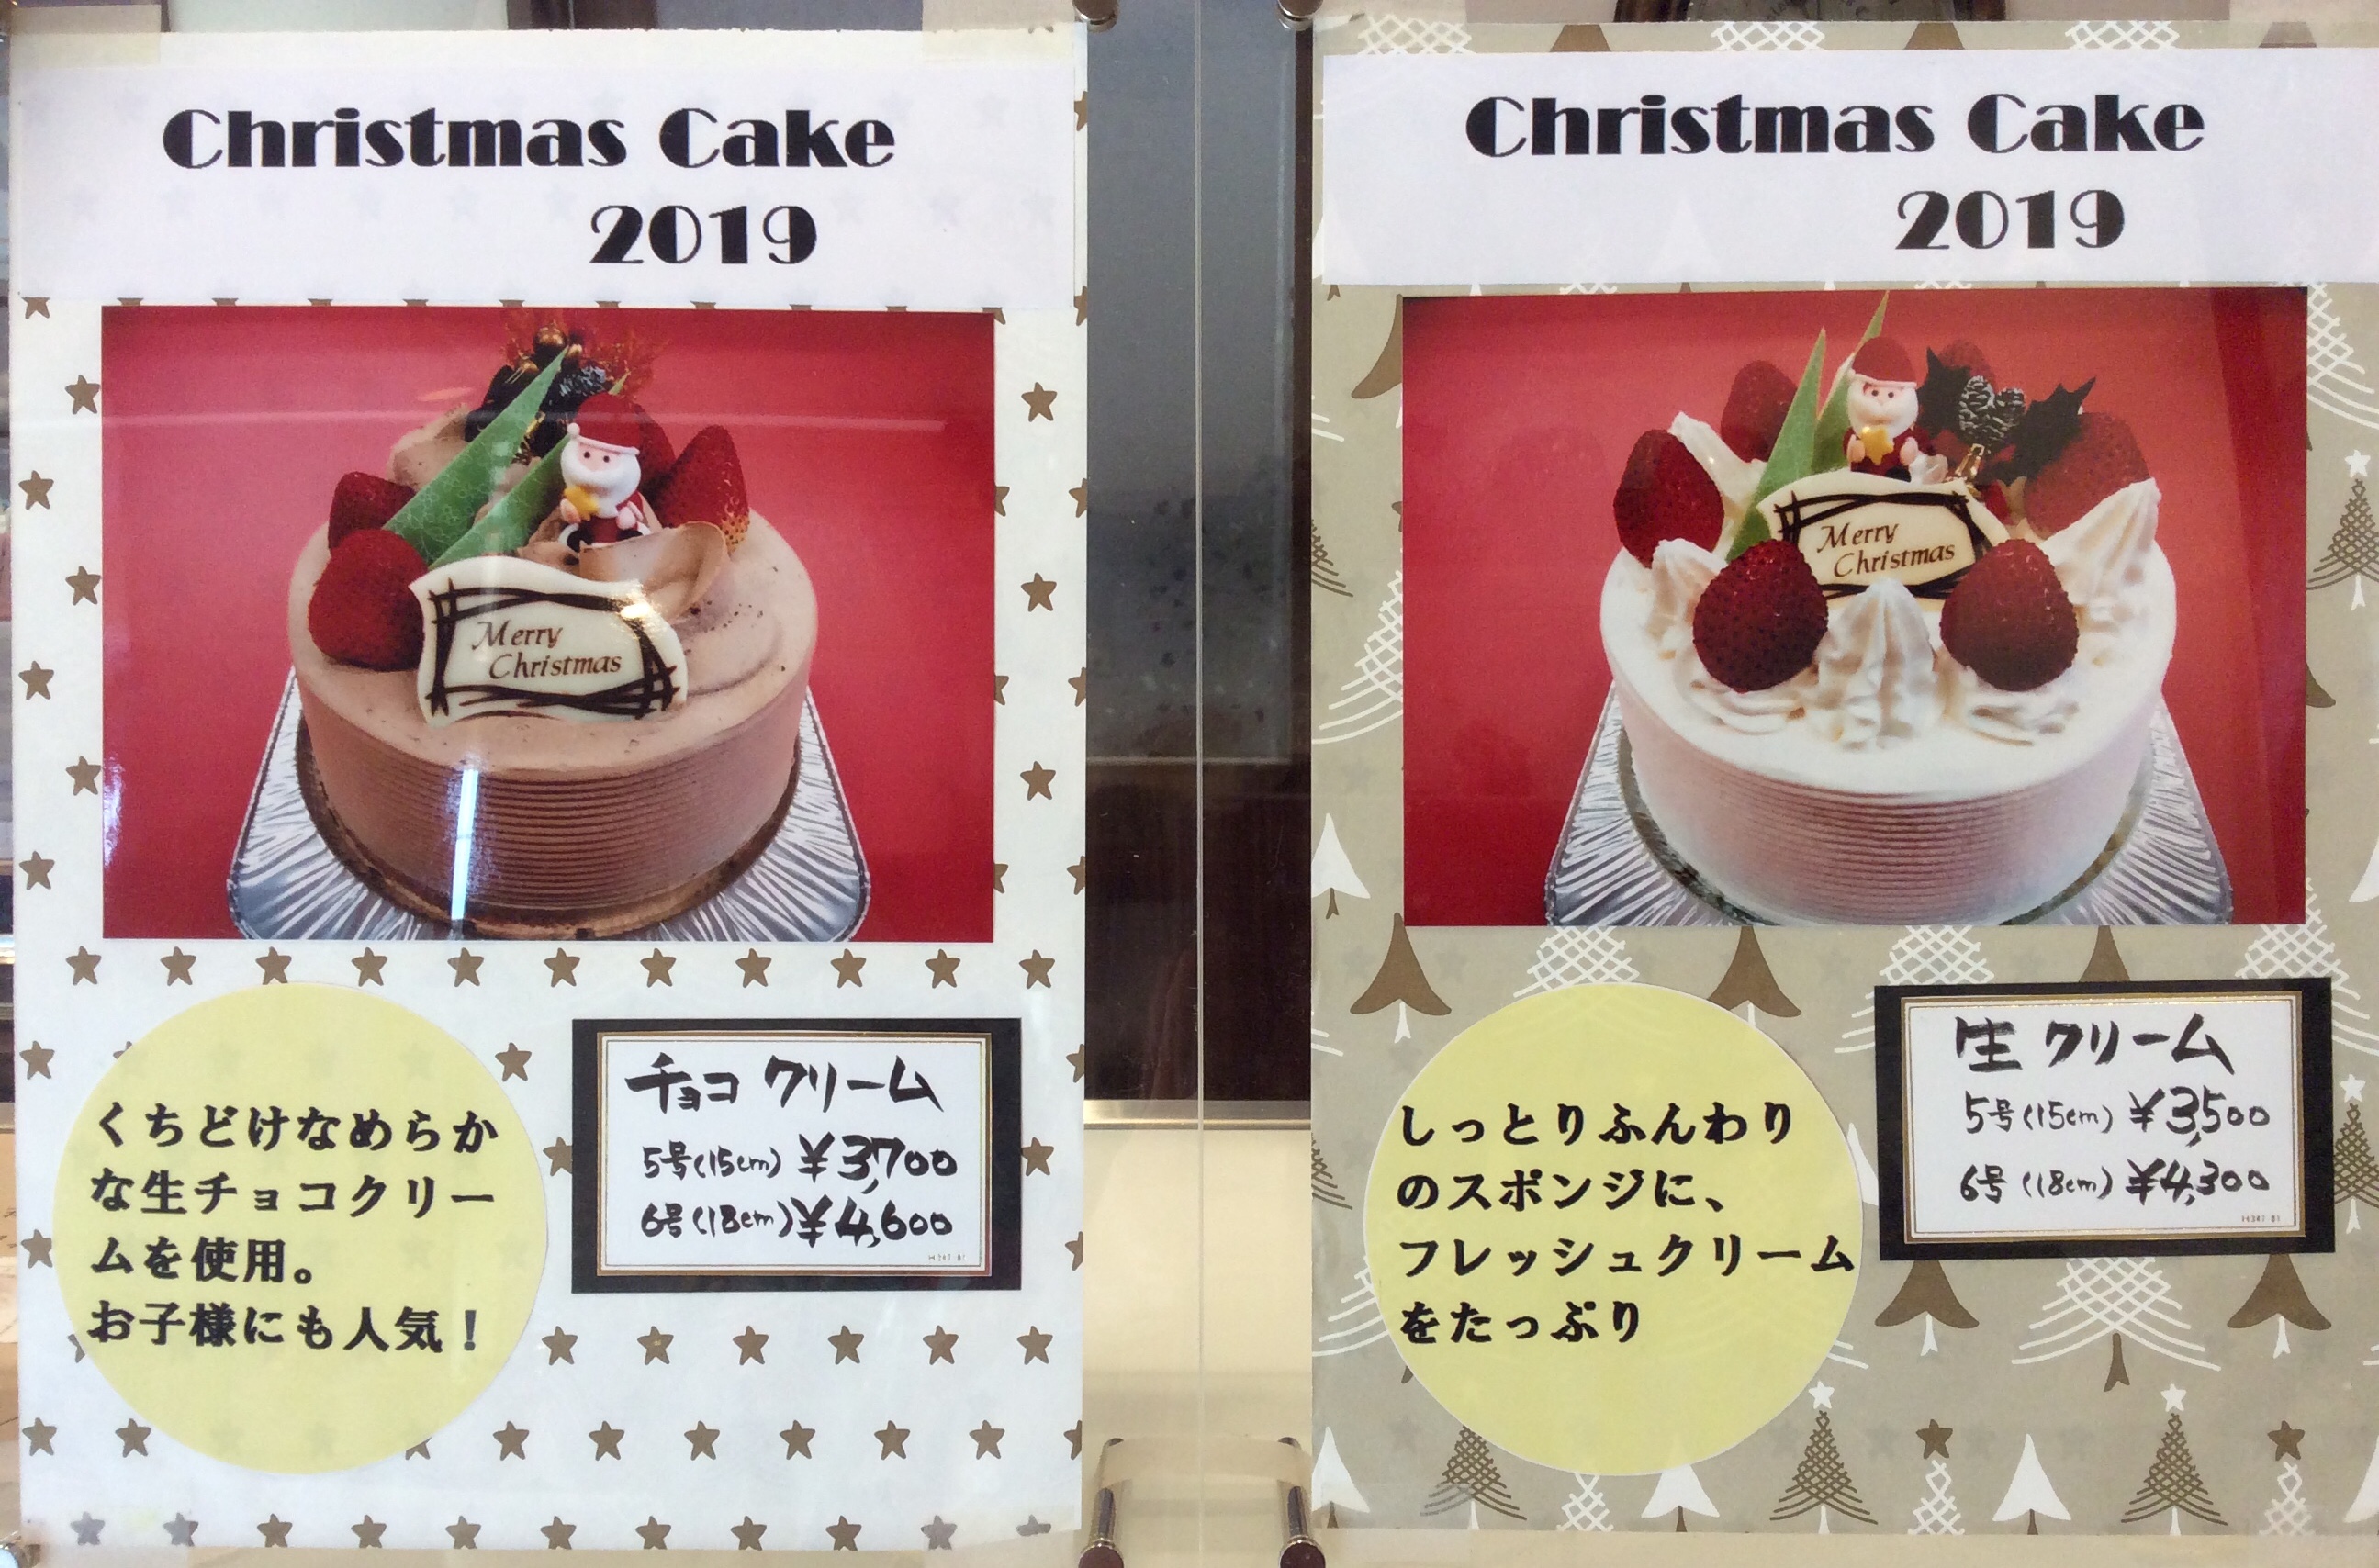 19年クリスマスケーキについて 手作りケーキの店 エーデルマン 滋賀県草津市のケーキ店